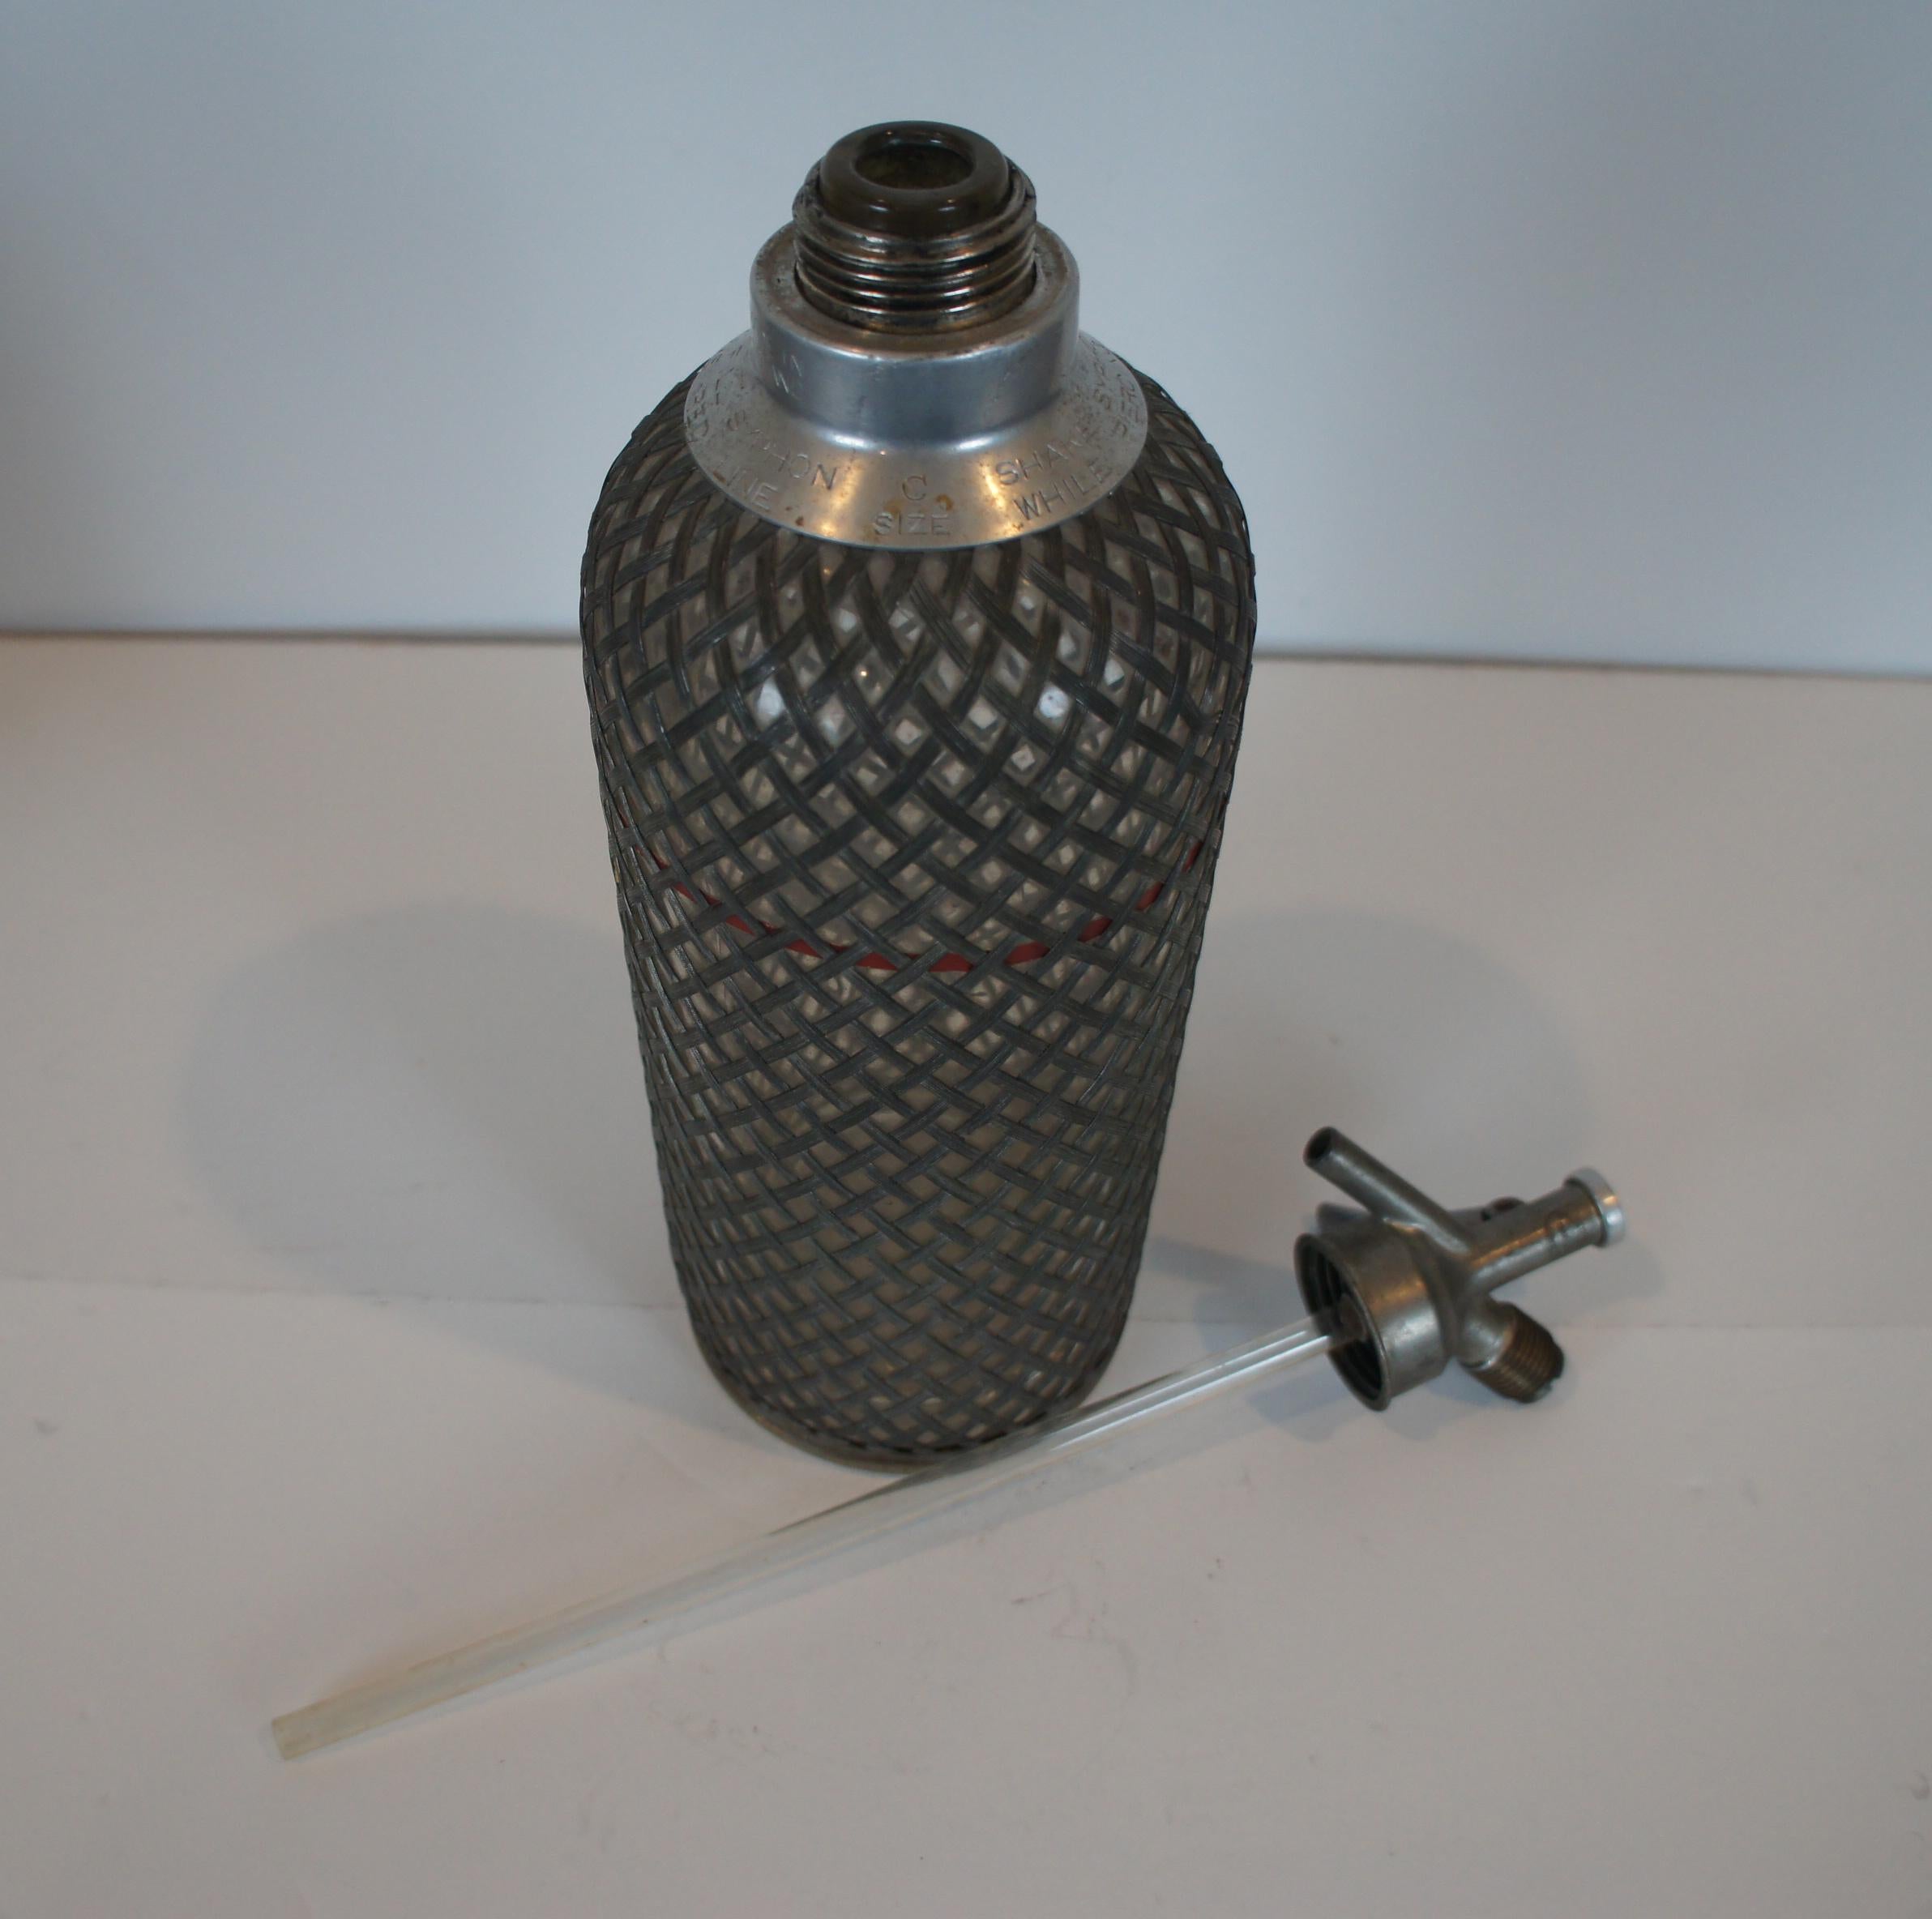 2 Antique Art Deco Sparklets Seltzer Bottles Mesh Wire Siphon Syphon Barware 1